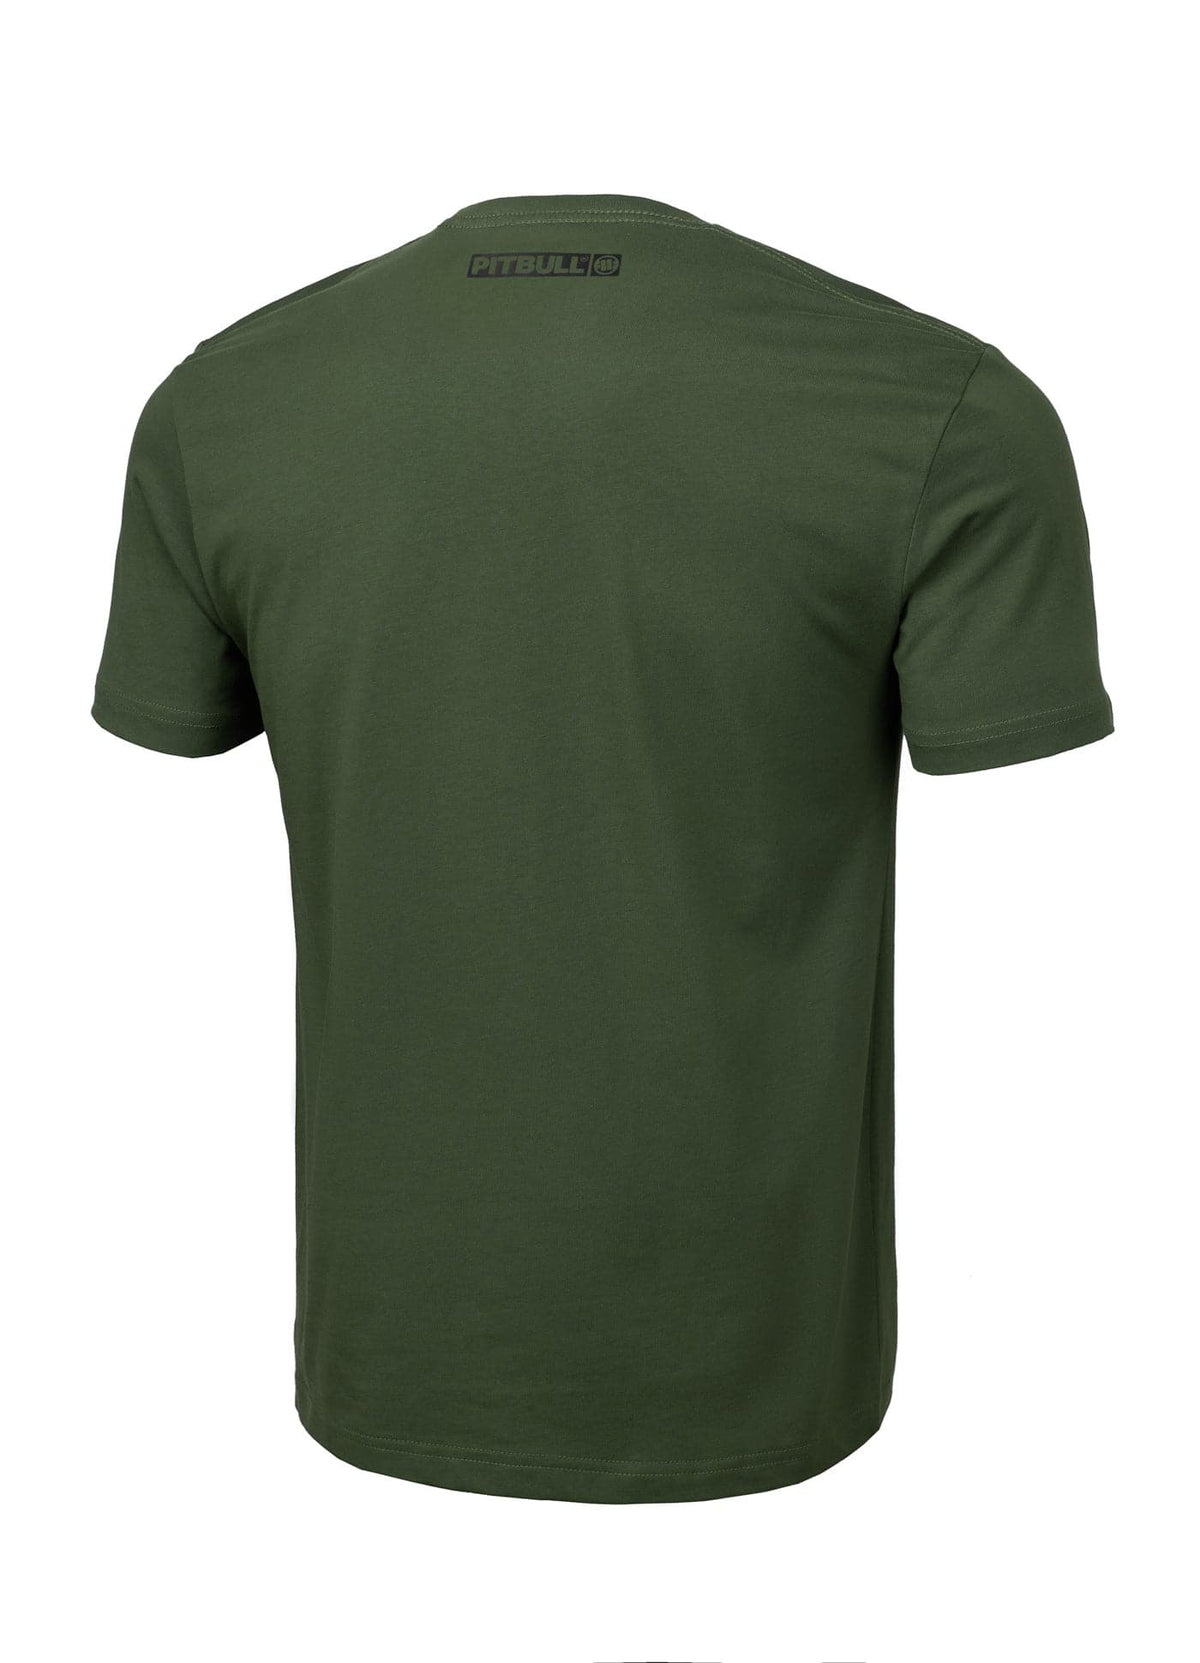 HILLTOP Lightweight Olive T-shirt